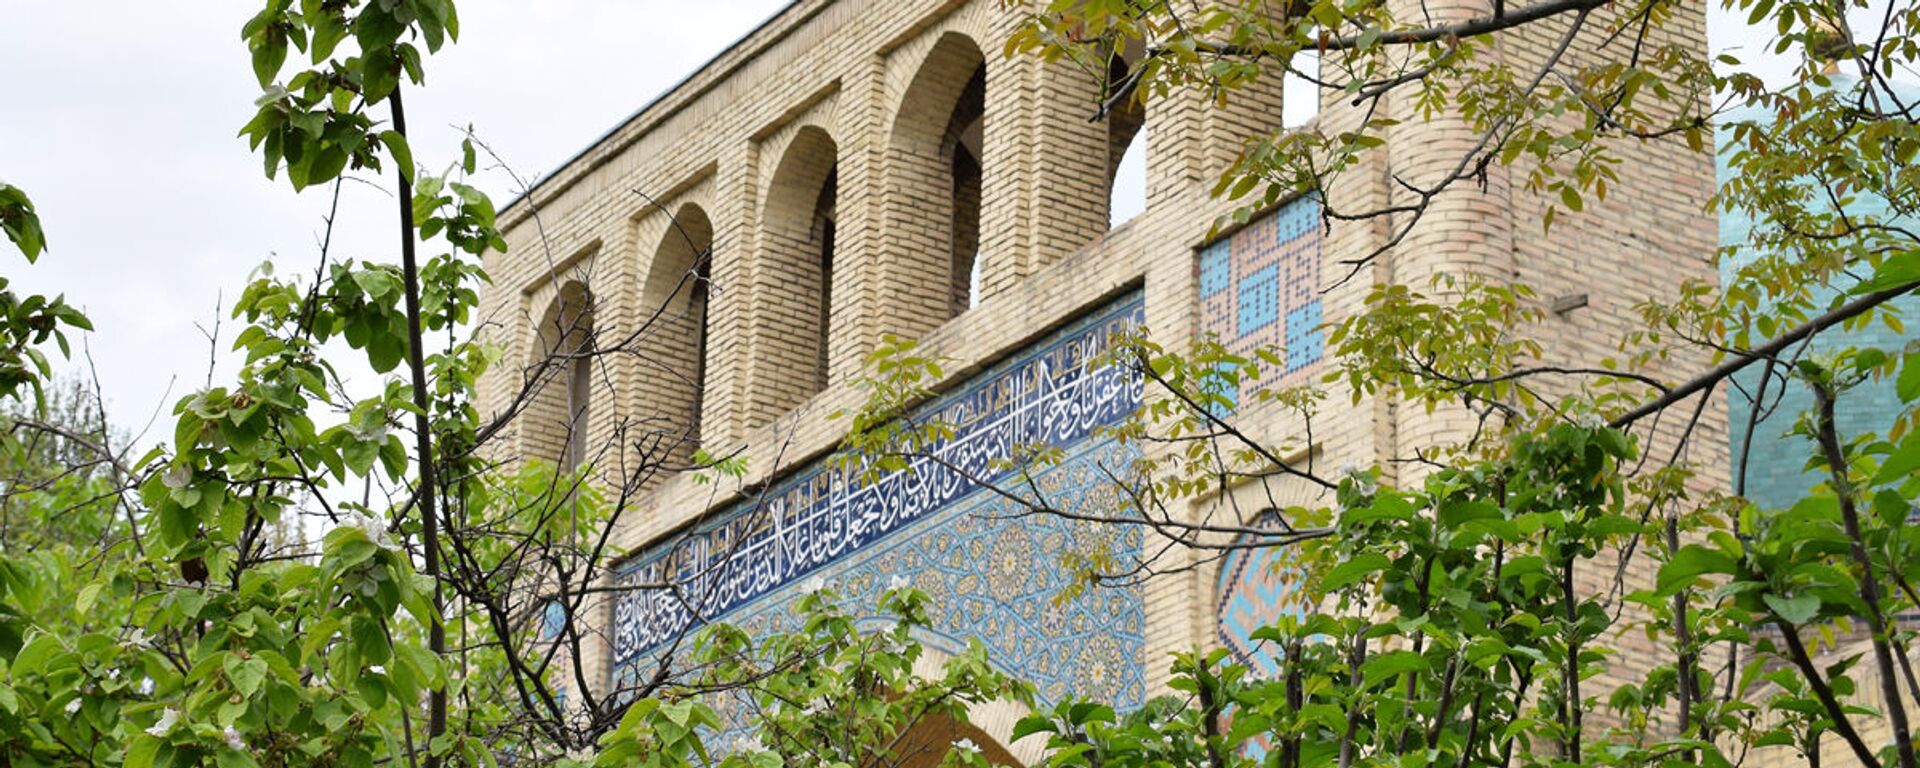 Международная исламская академия Узбекистана - Sputnik Узбекистан, 1920, 11.04.2019